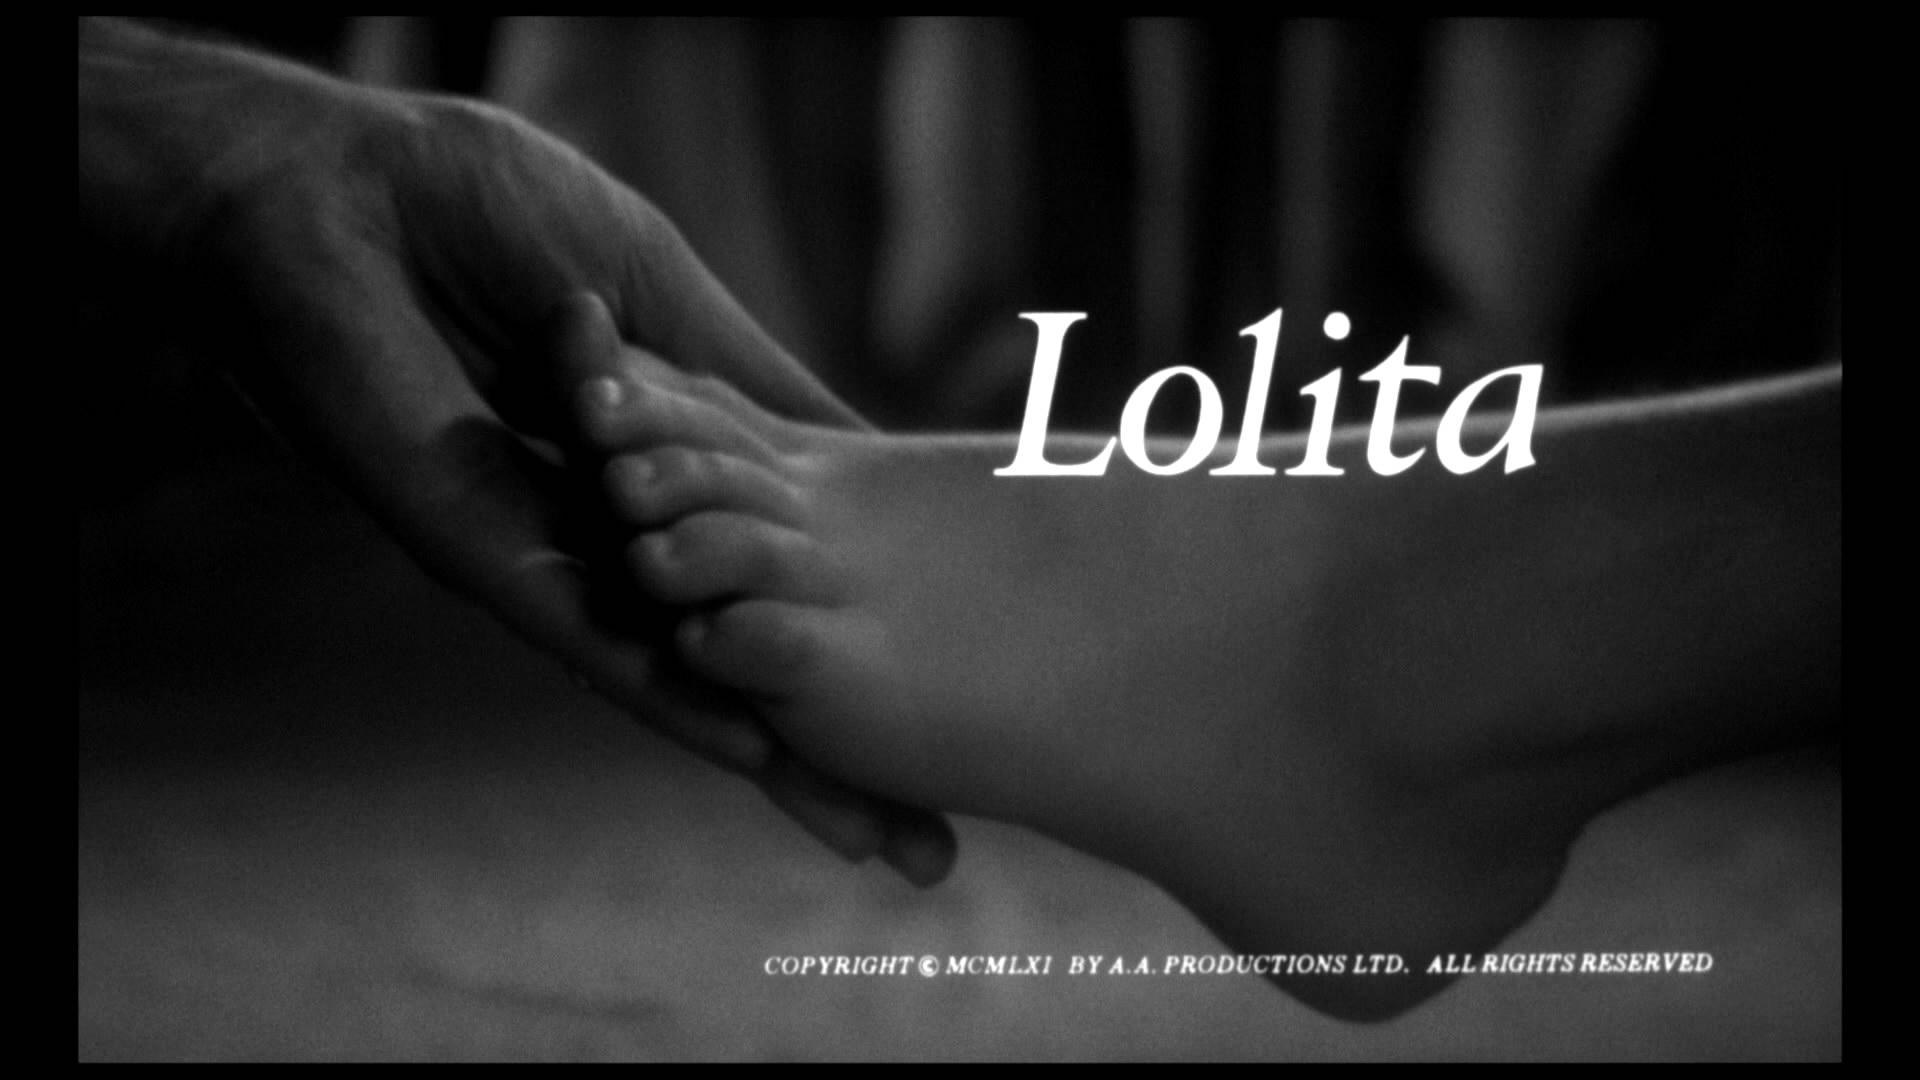 “据说每个男人都想要一件旗袍”-洛丽塔大哥lolita-洛丽塔大哥lolita-哔哩哔哩视频